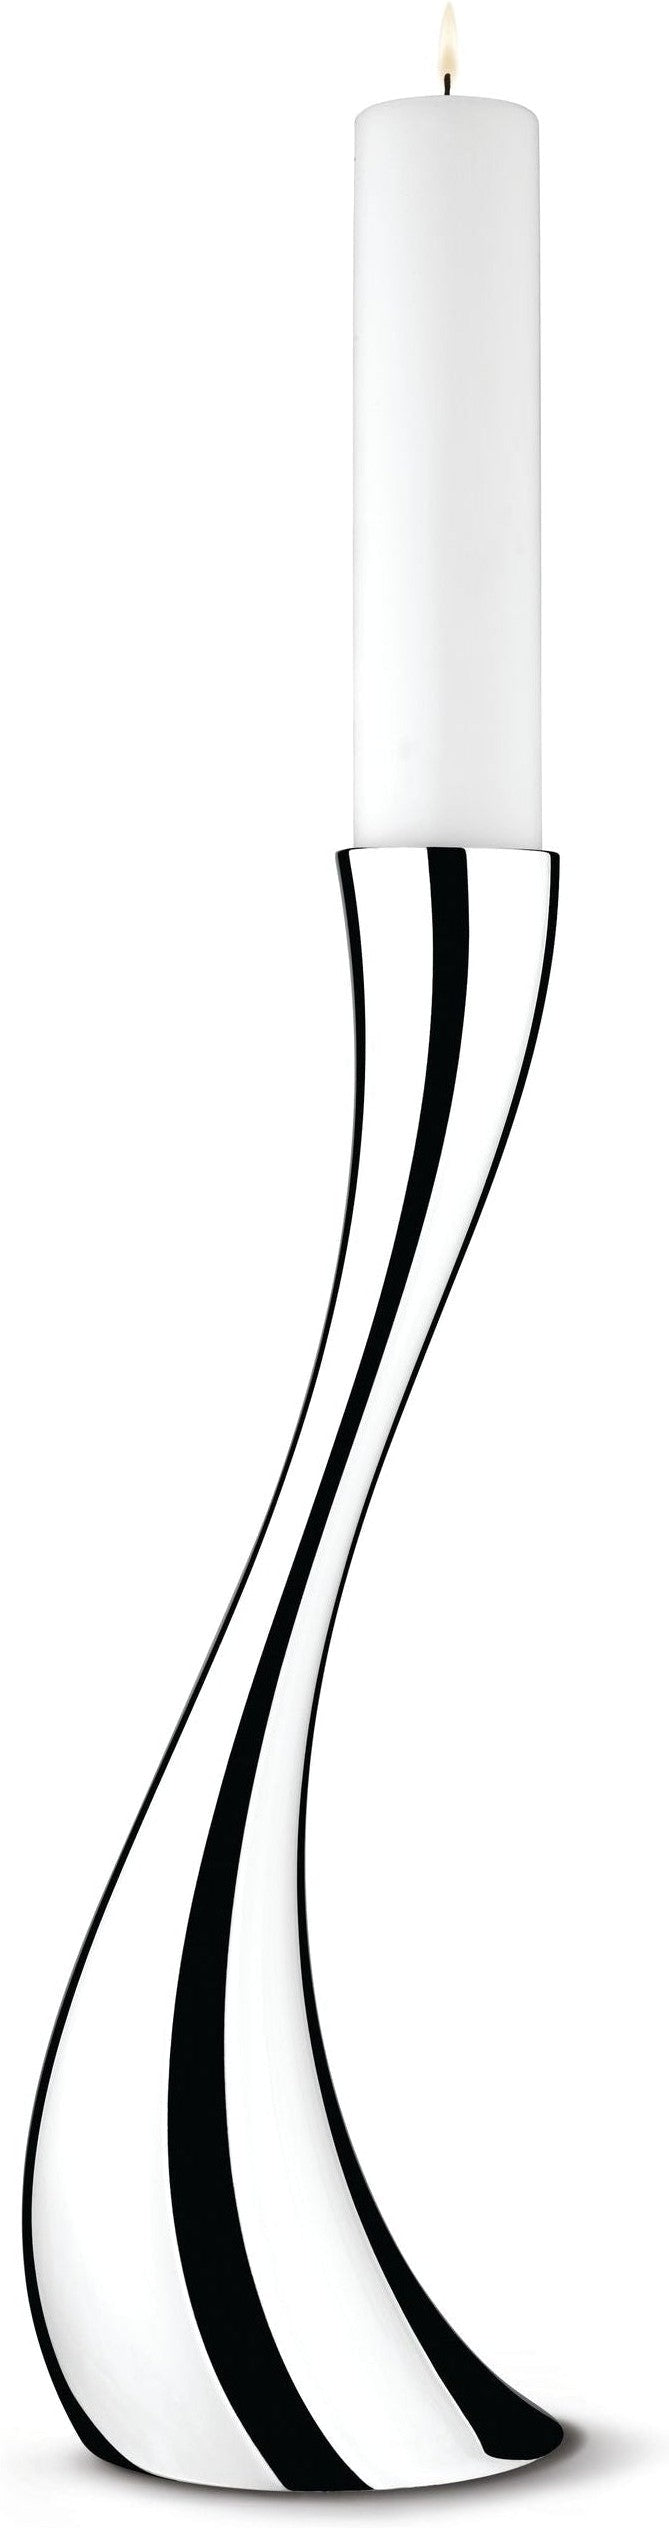 Georg Jensen Cobra podlahový držák svíčky černé/bílé, 50 cm